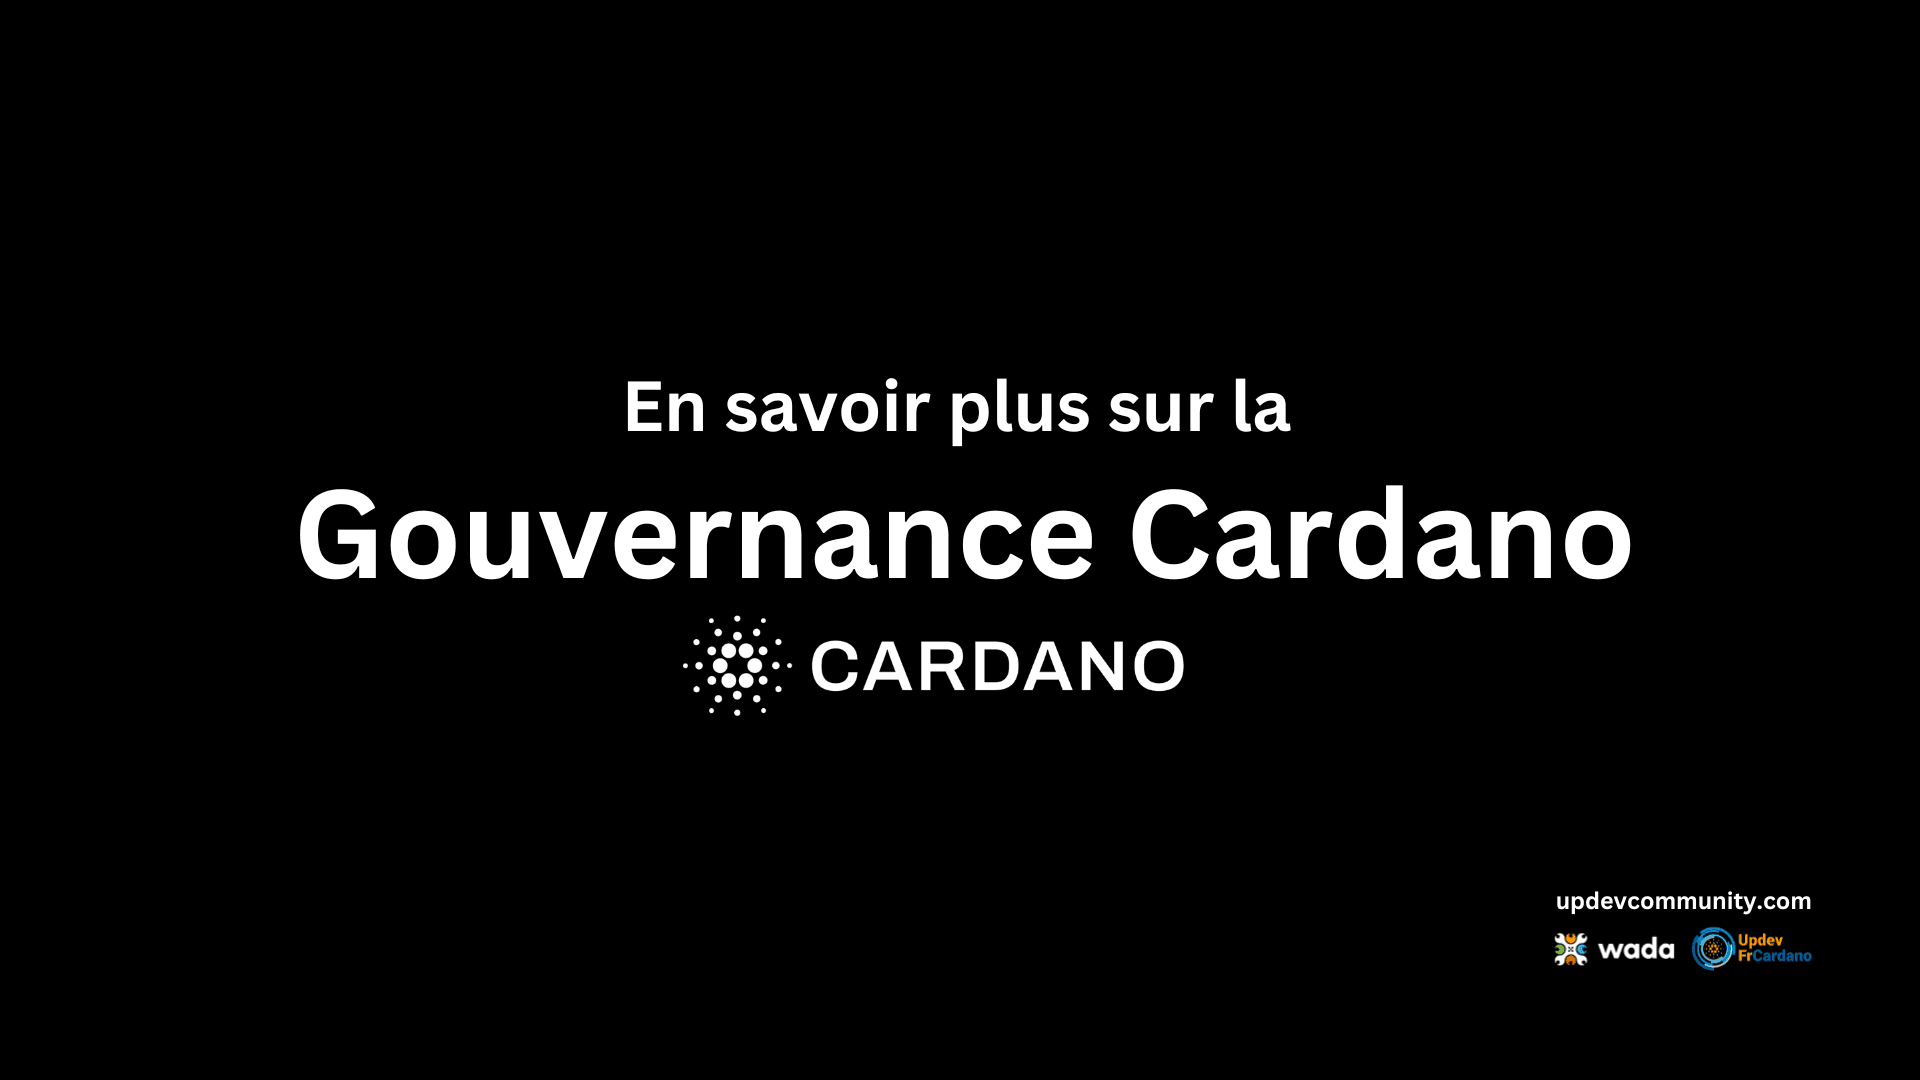 En savoir plus sur la gouvernance de Cardano | Updev Community